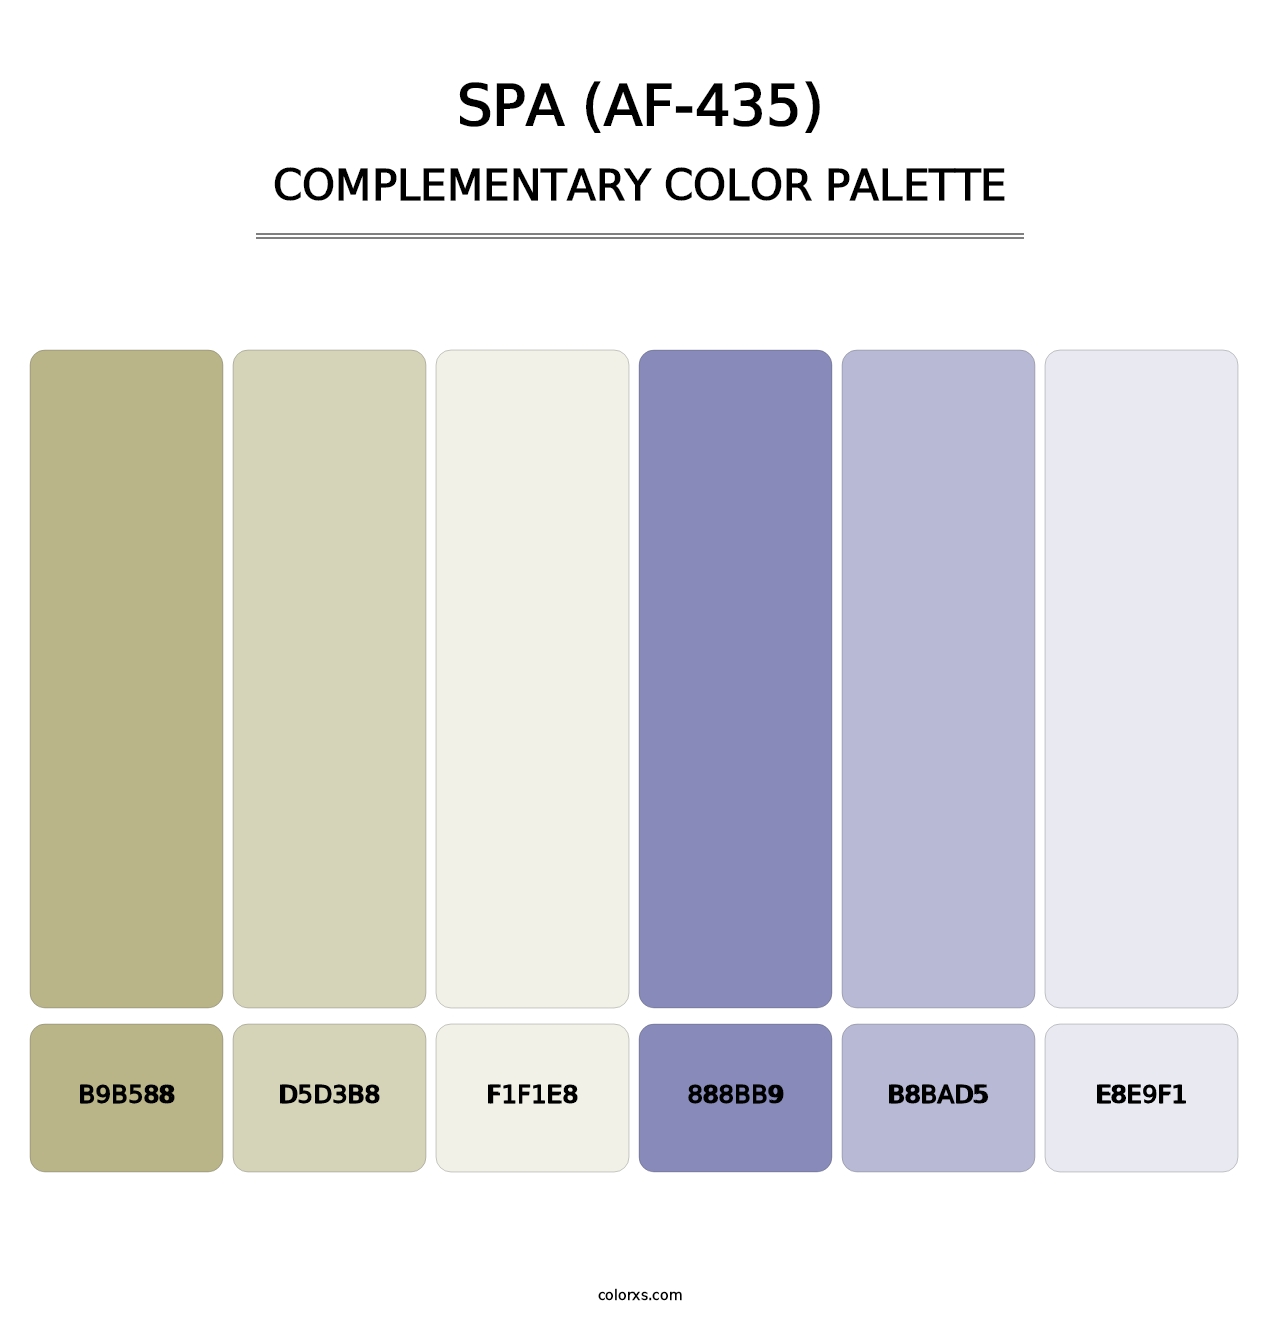 Spa (AF-435) - Complementary Color Palette